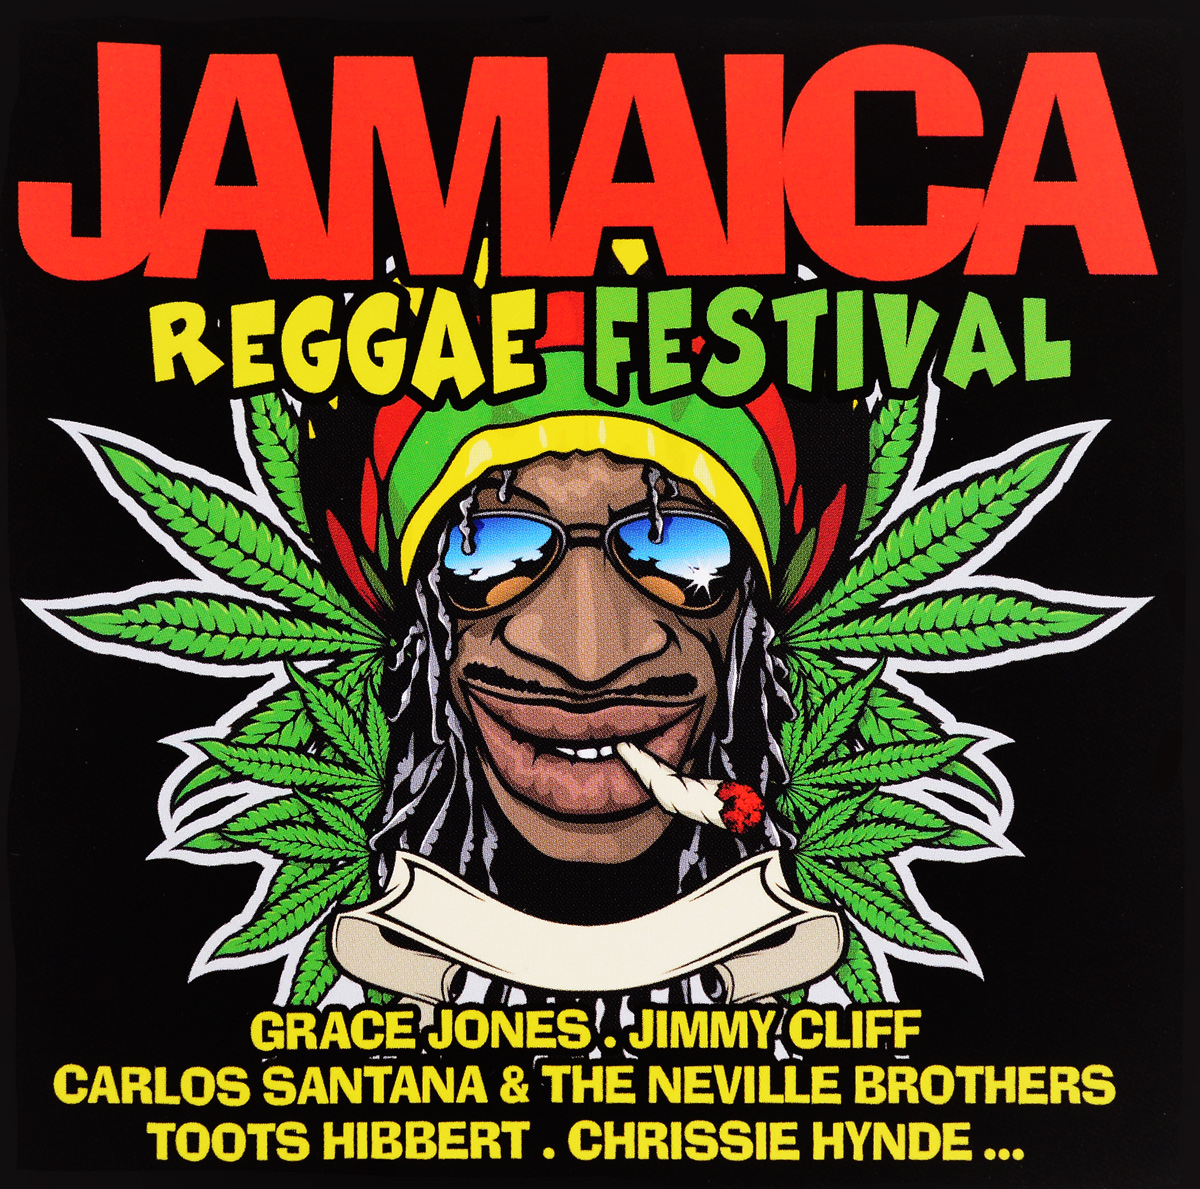 Jamaica Reggae Festival